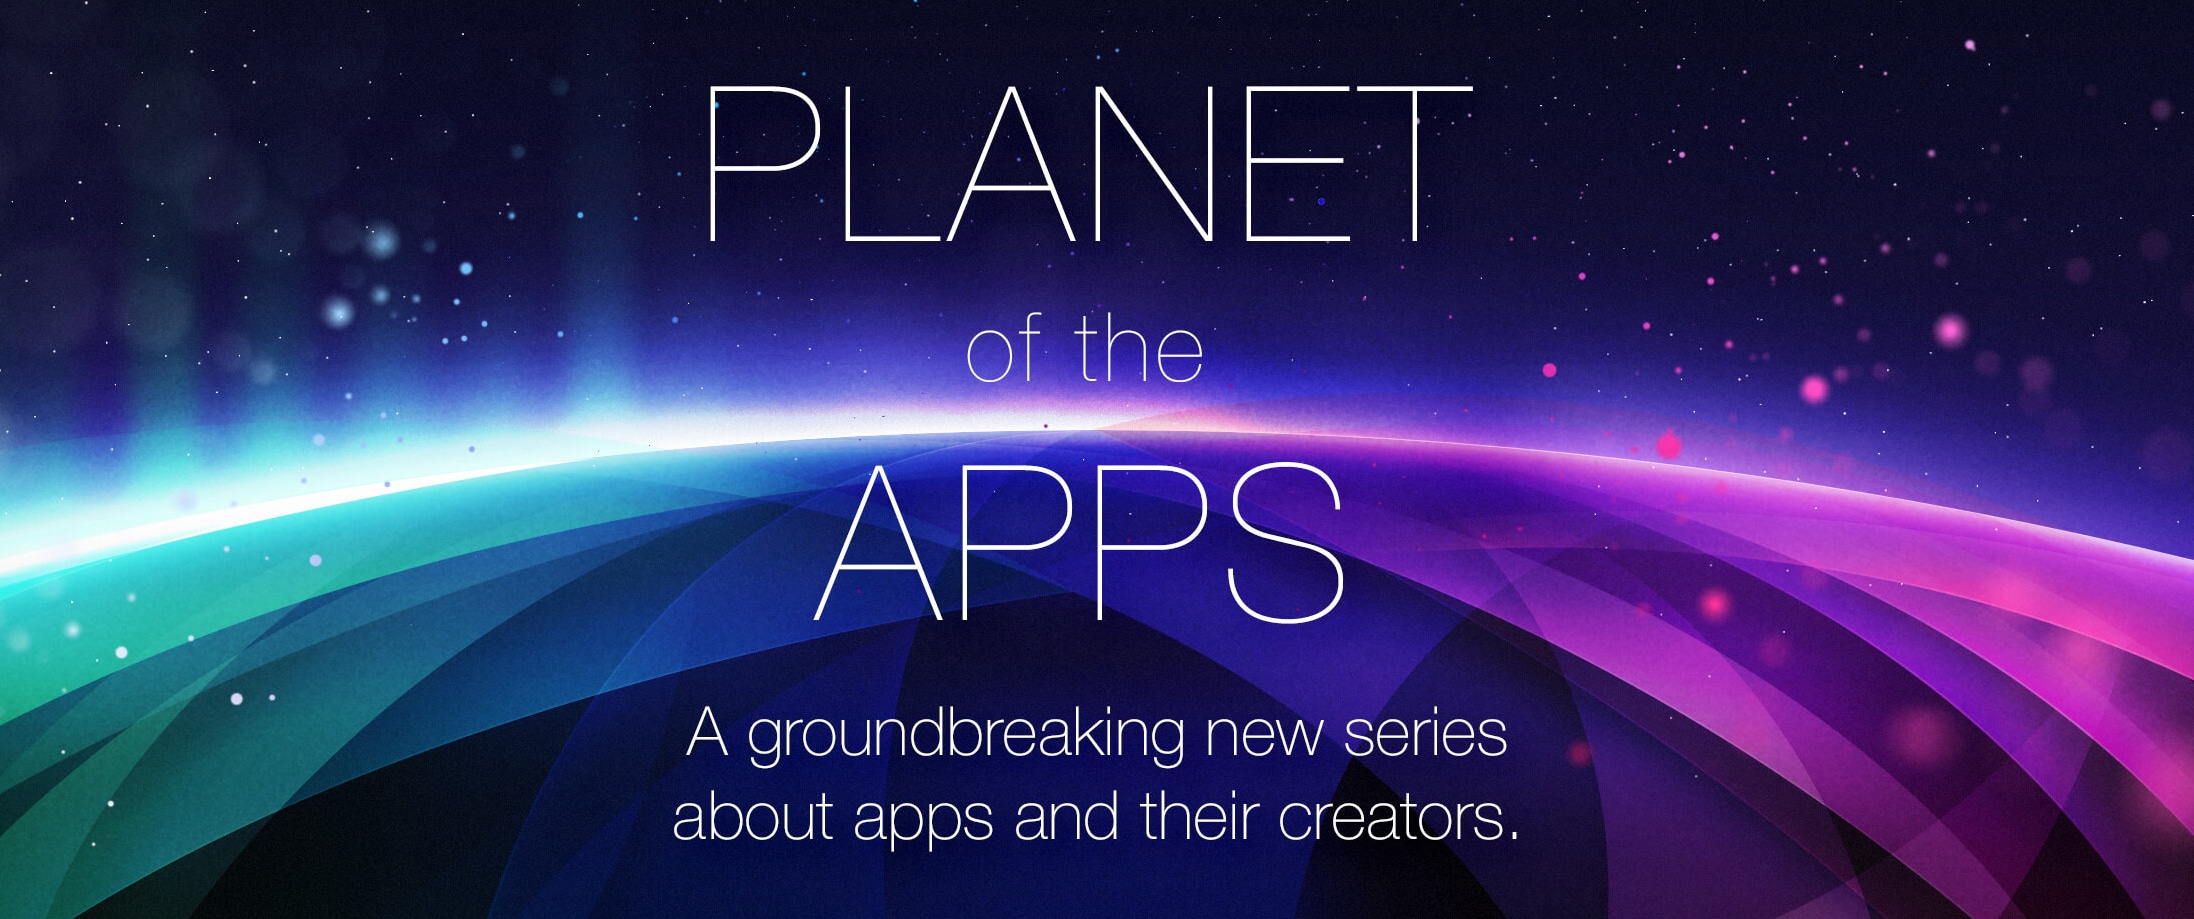 Planet of the apps série original